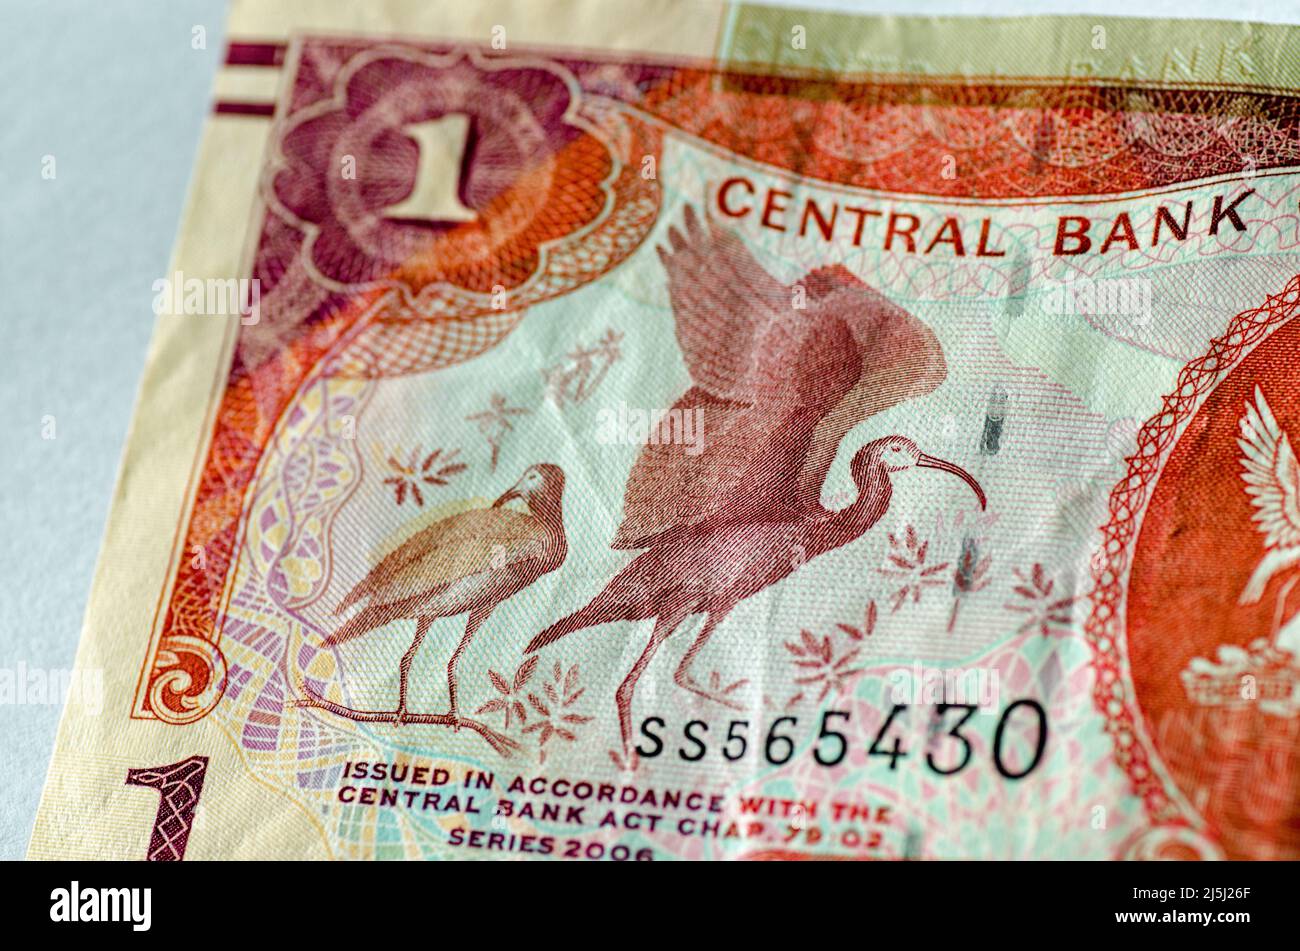 Dettaglio da una banconota da un dollaro di Trinidad e Tobago con scarlatto Ibis (Eudocimus ruber) uccelli e alcune piante. Banconota usata, fotografata Foto Stock